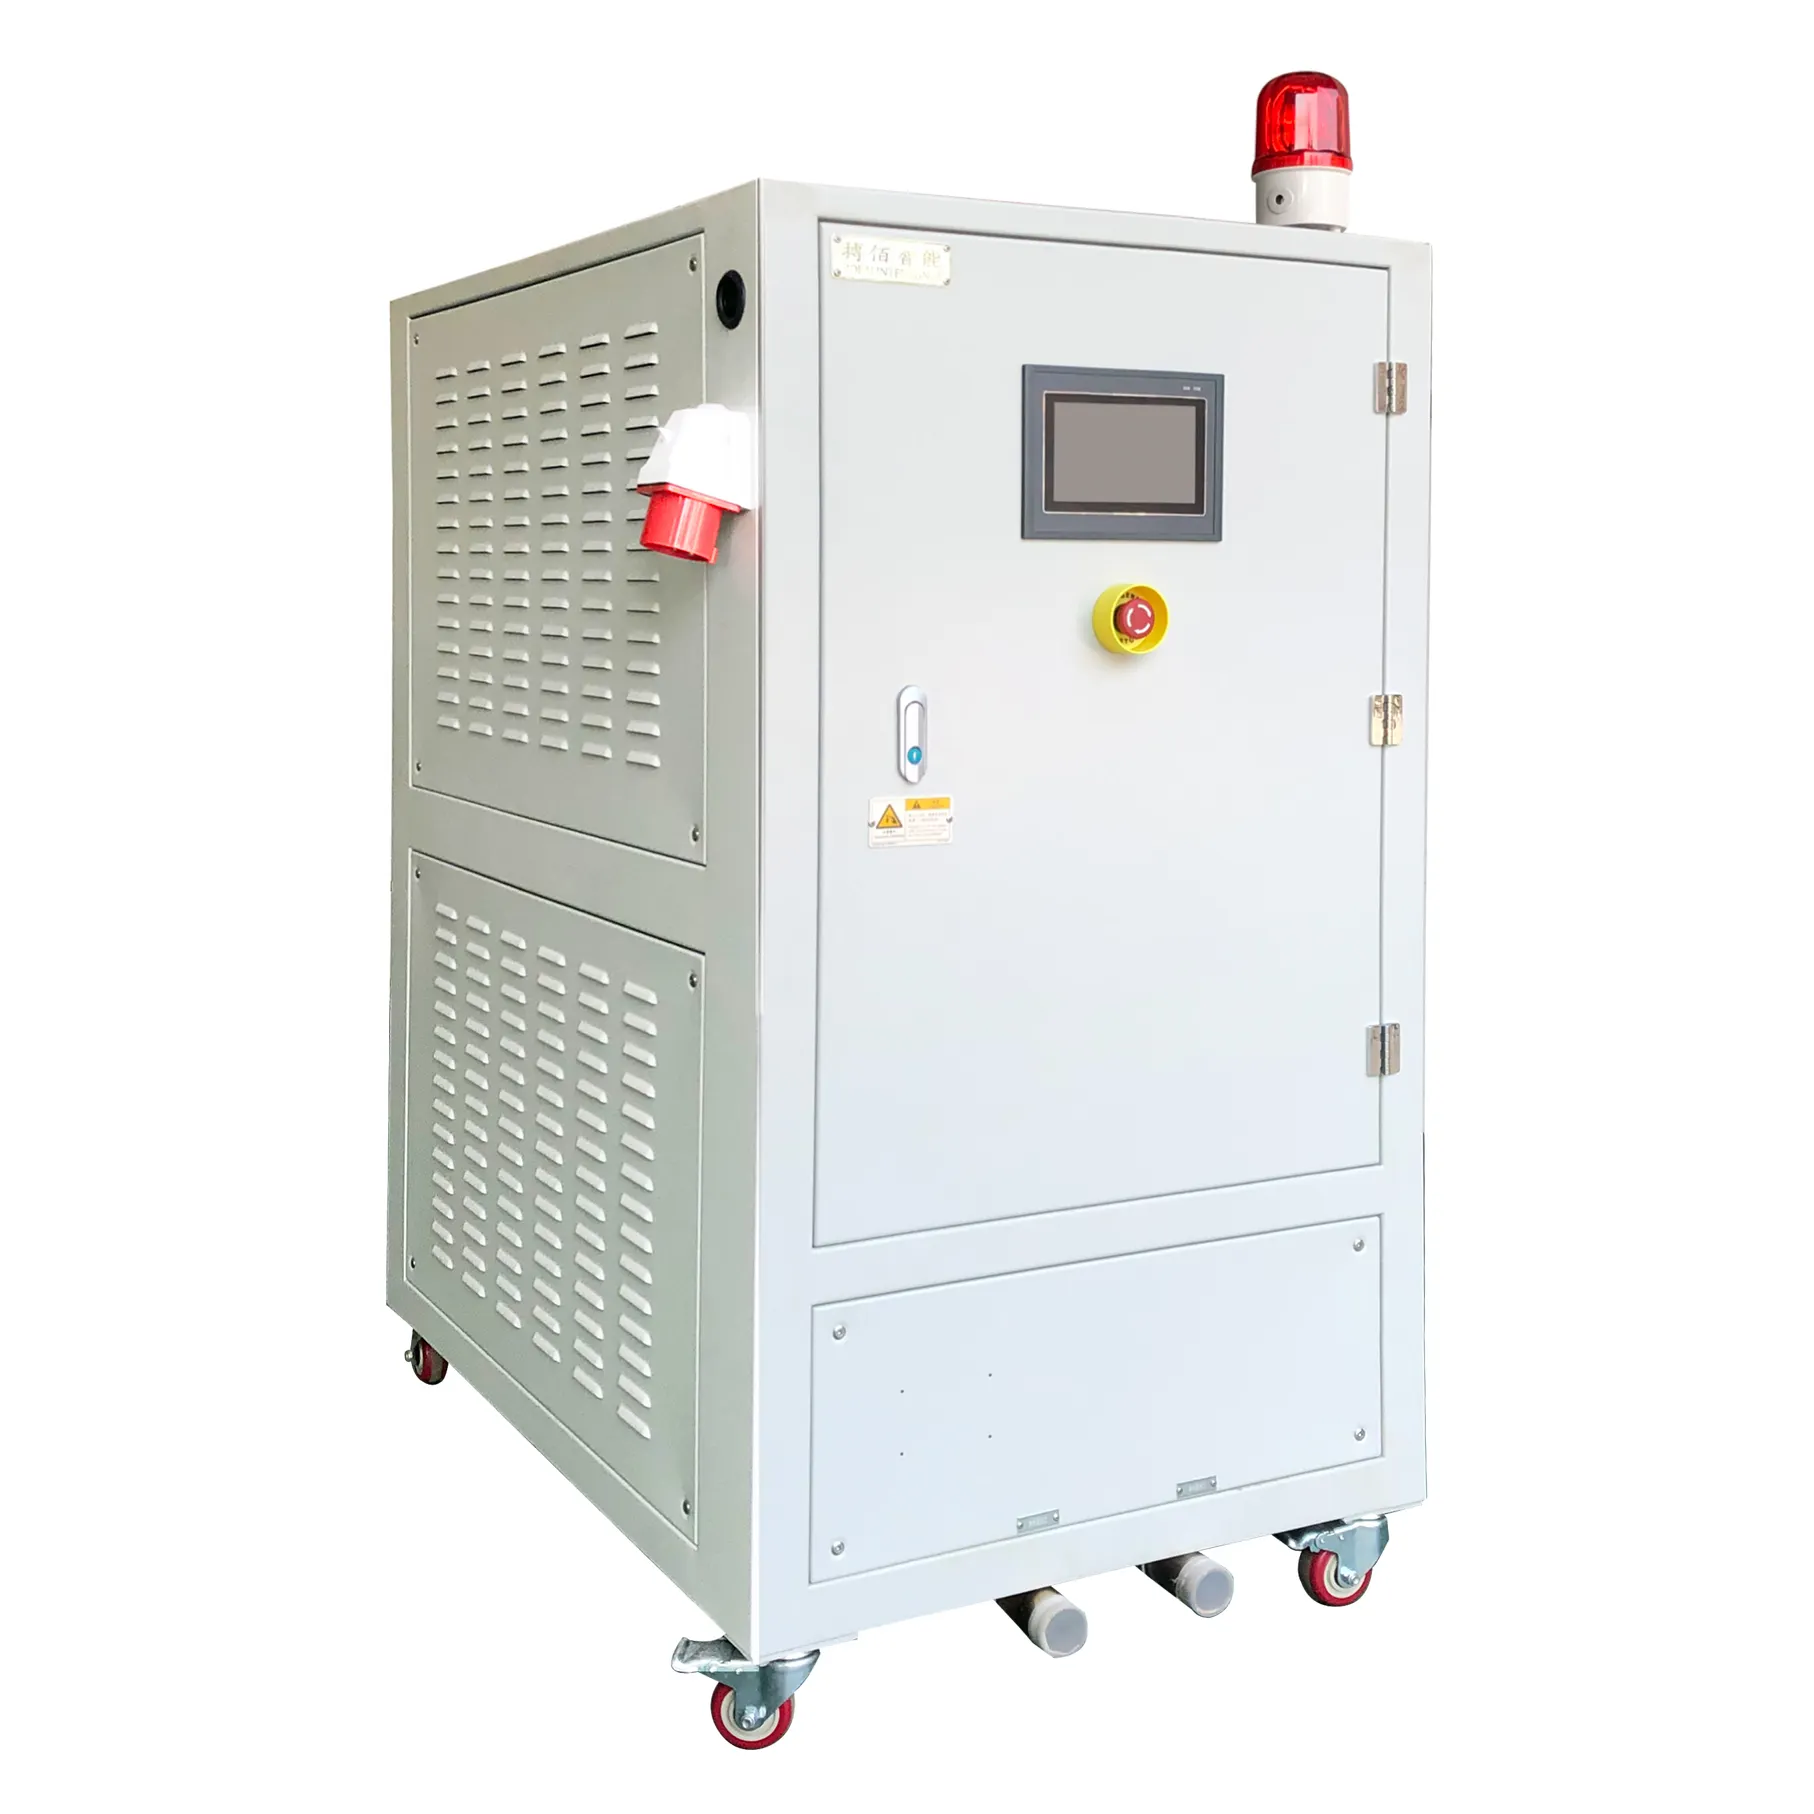 Standaard Type 120 Graden Watercirculatie Temperatuurregelaar Hot Runner Control Verwarmingsapparatuur